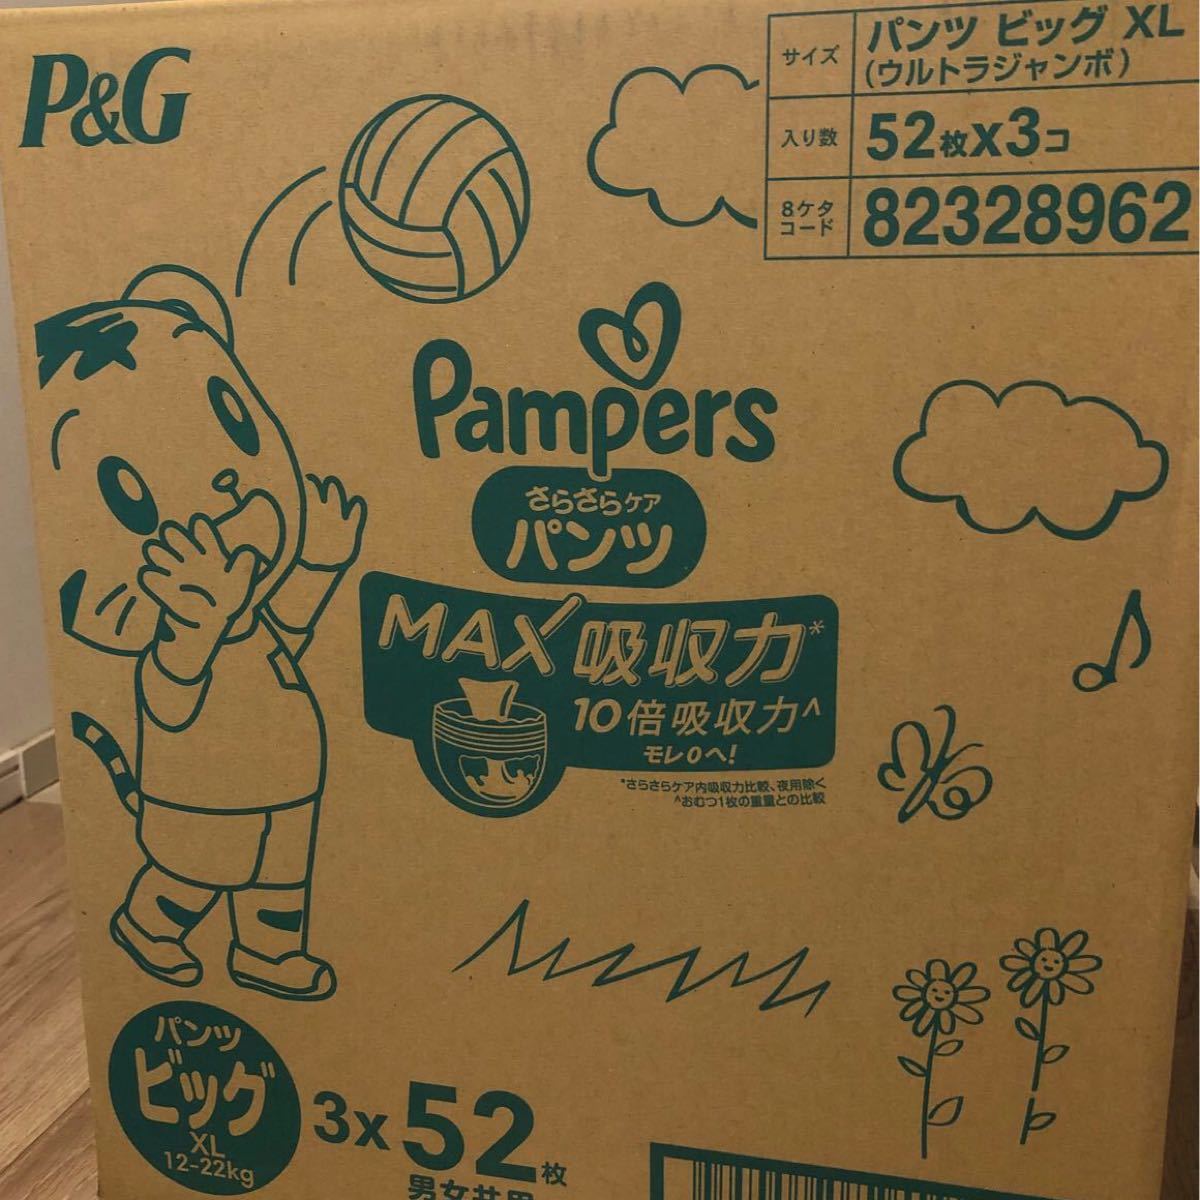 ○パンパース ビッグ MAX吸収力パンツ○1箱 - www.hondaesseauto.com